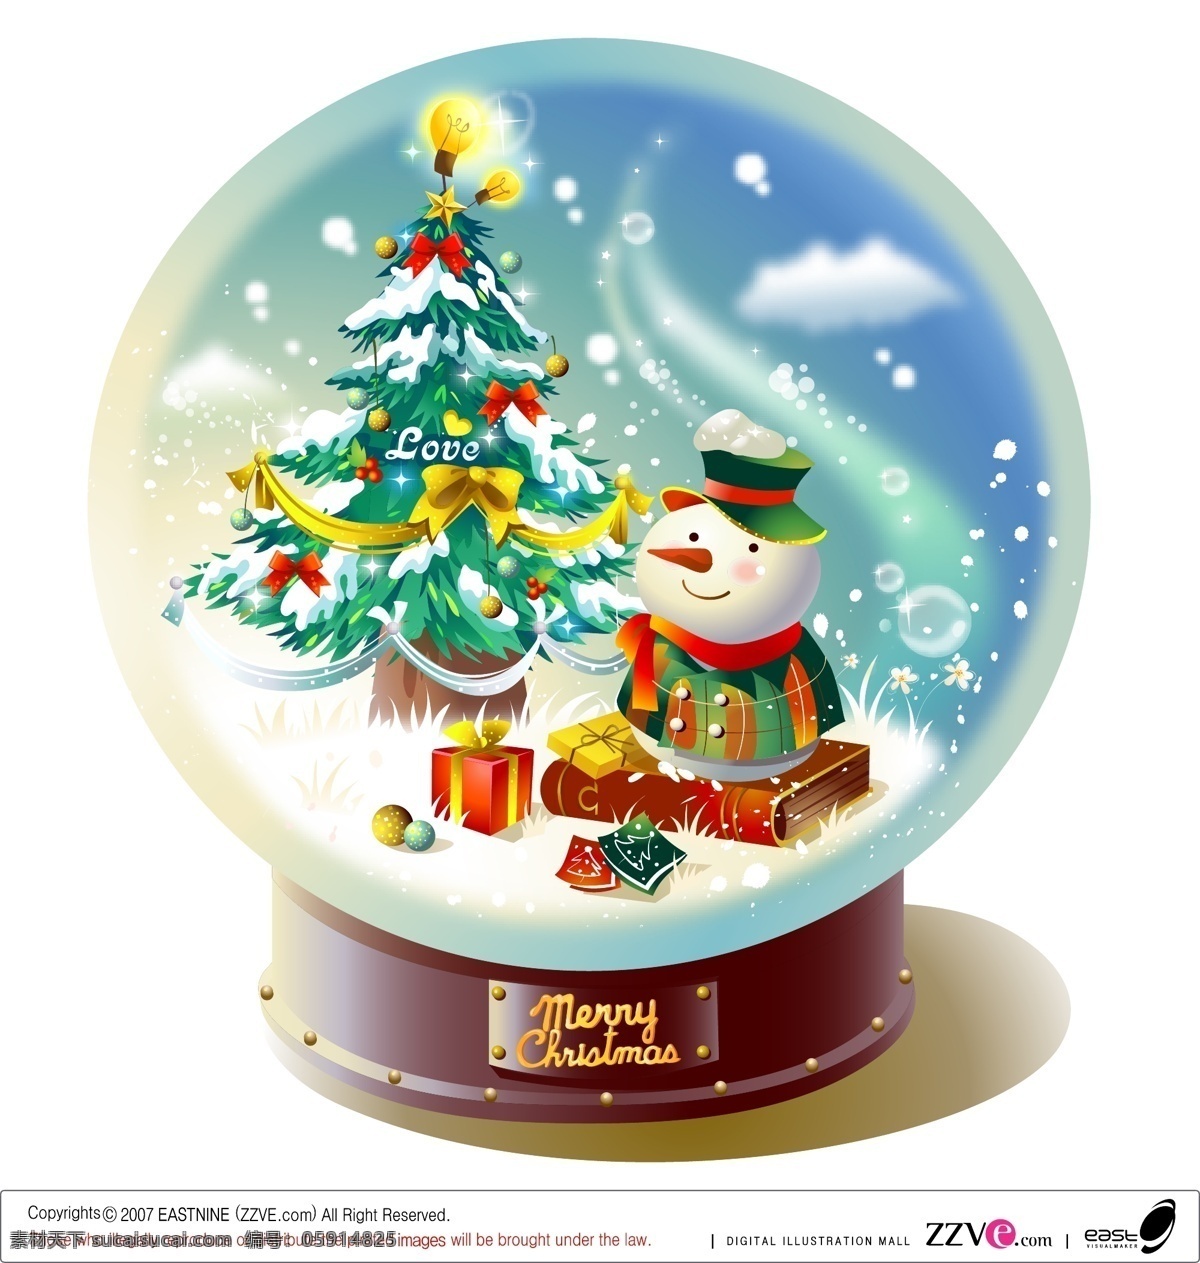 精美 圣诞 水晶球 矢量 矢量节日 圣诞节 圆球 雪人 圣诞树 雪花 圣诞节快乐 矢量图 白色